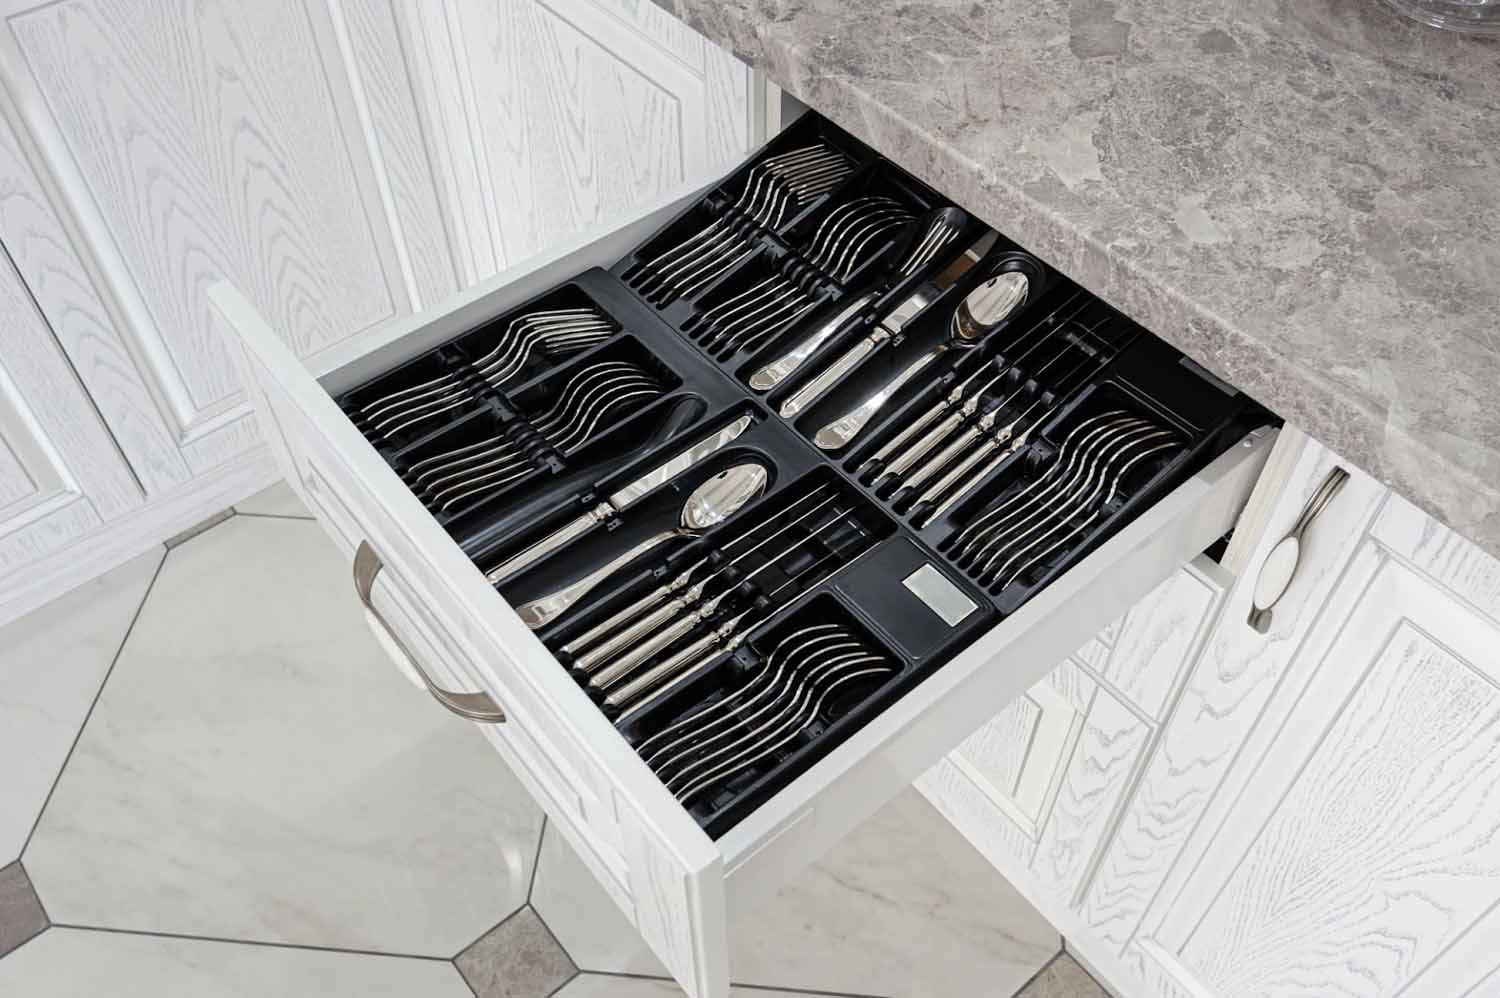 Open kitchen drawer with silverware organizer